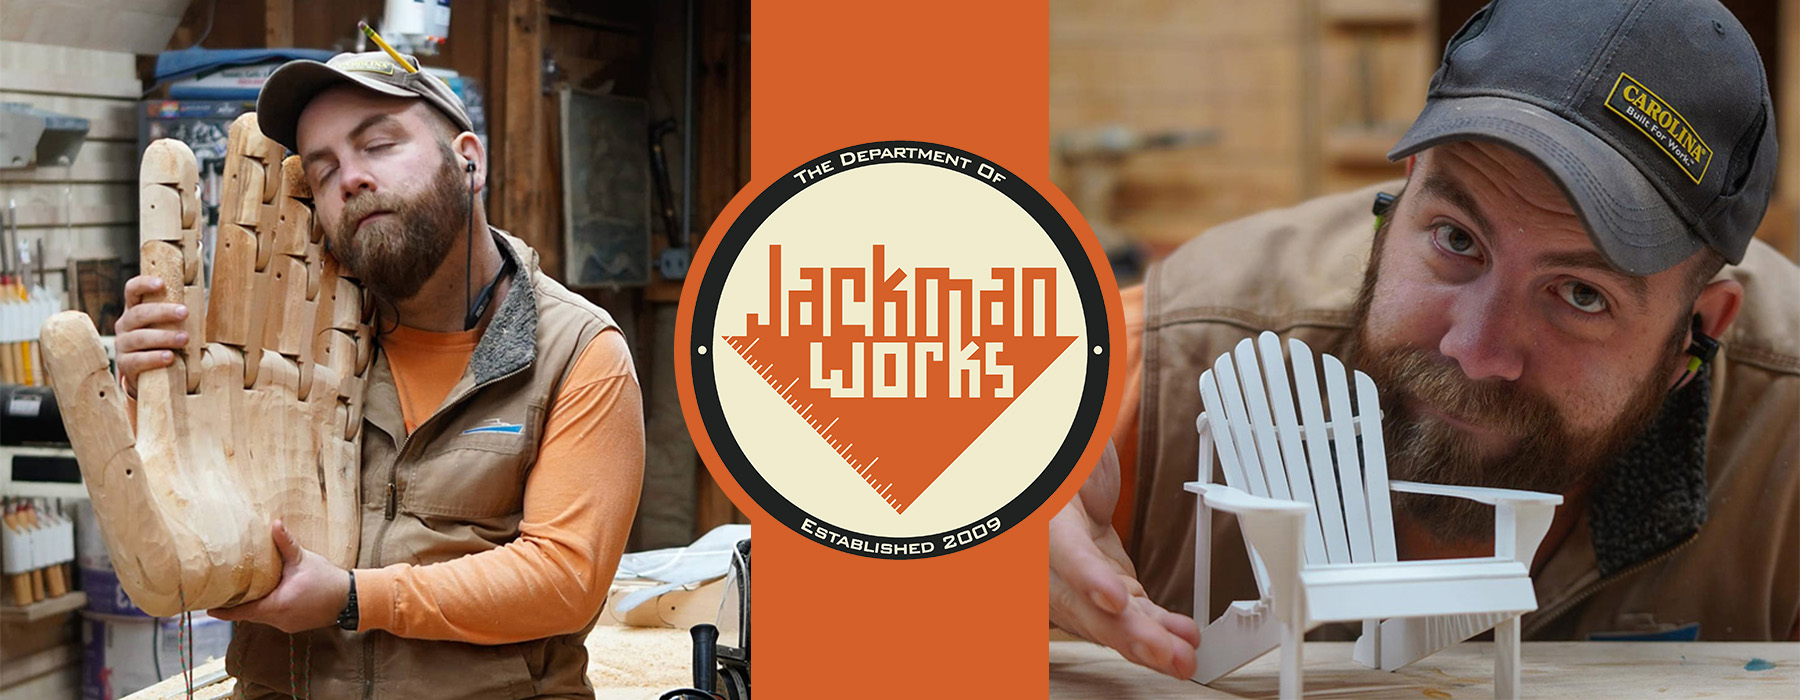 Jackman sostiene una gran mano de madera y posa junto a una silla de jardín en miniatura. Logotipo de Jackman Works: Departamento de Jackman Works, establecido en 2009.